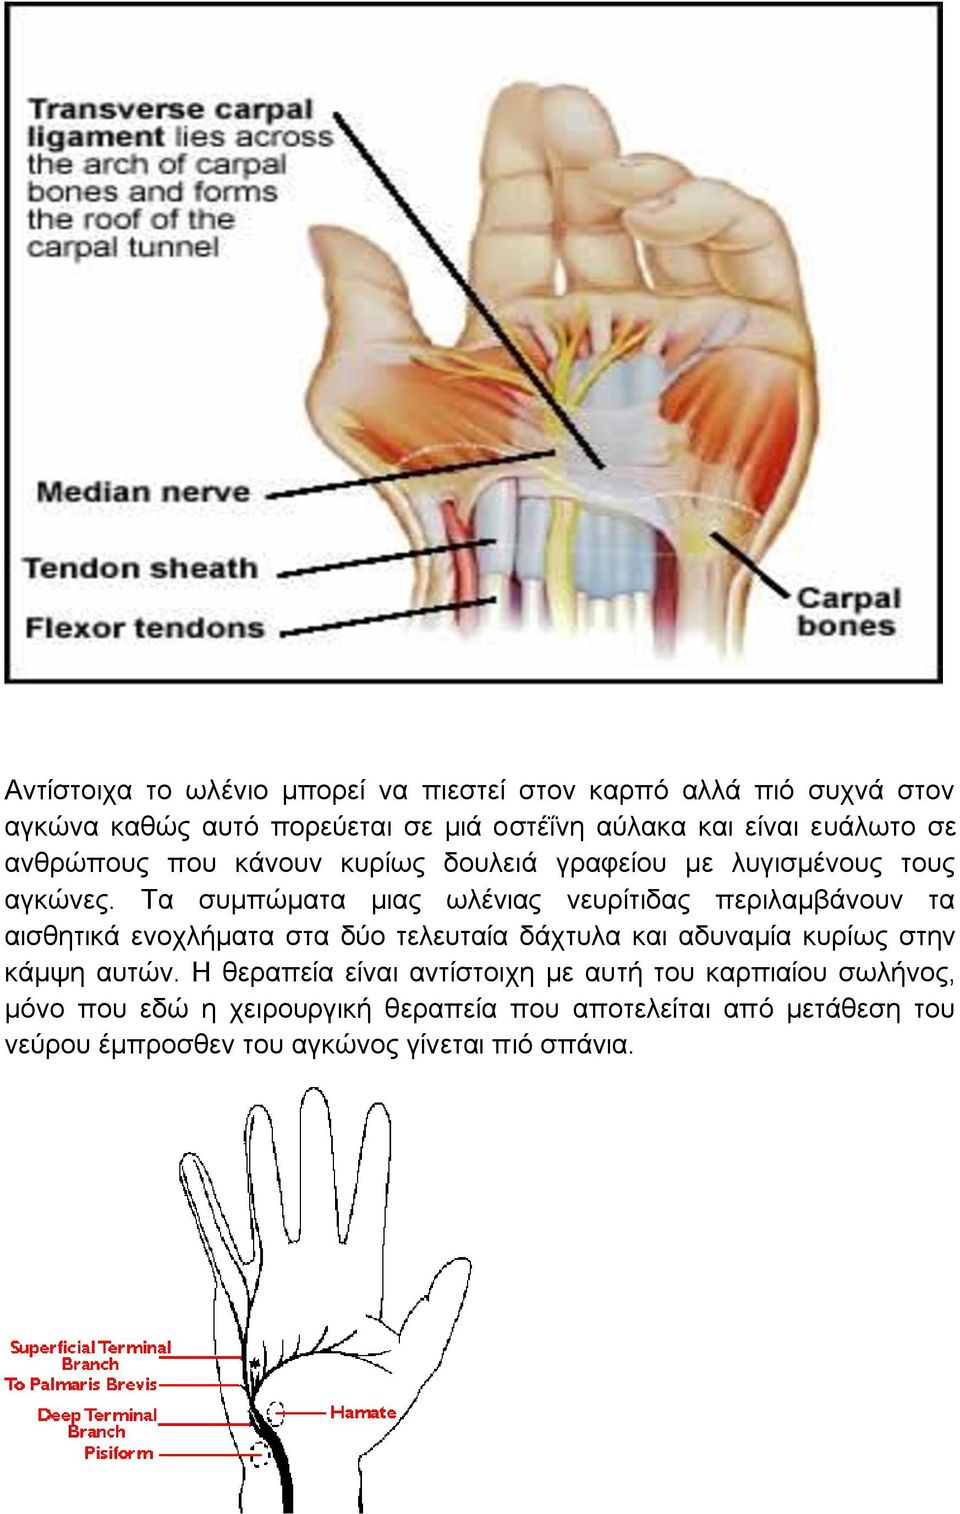 Τα συμπώματα μιας ωλένιας νευρίτιδας περιλαμβάνουν τα αισθητικά ενοχλήματα στα δύο τελευταία δάχτυλα και αδυναμία κυρίως στην κάμψη